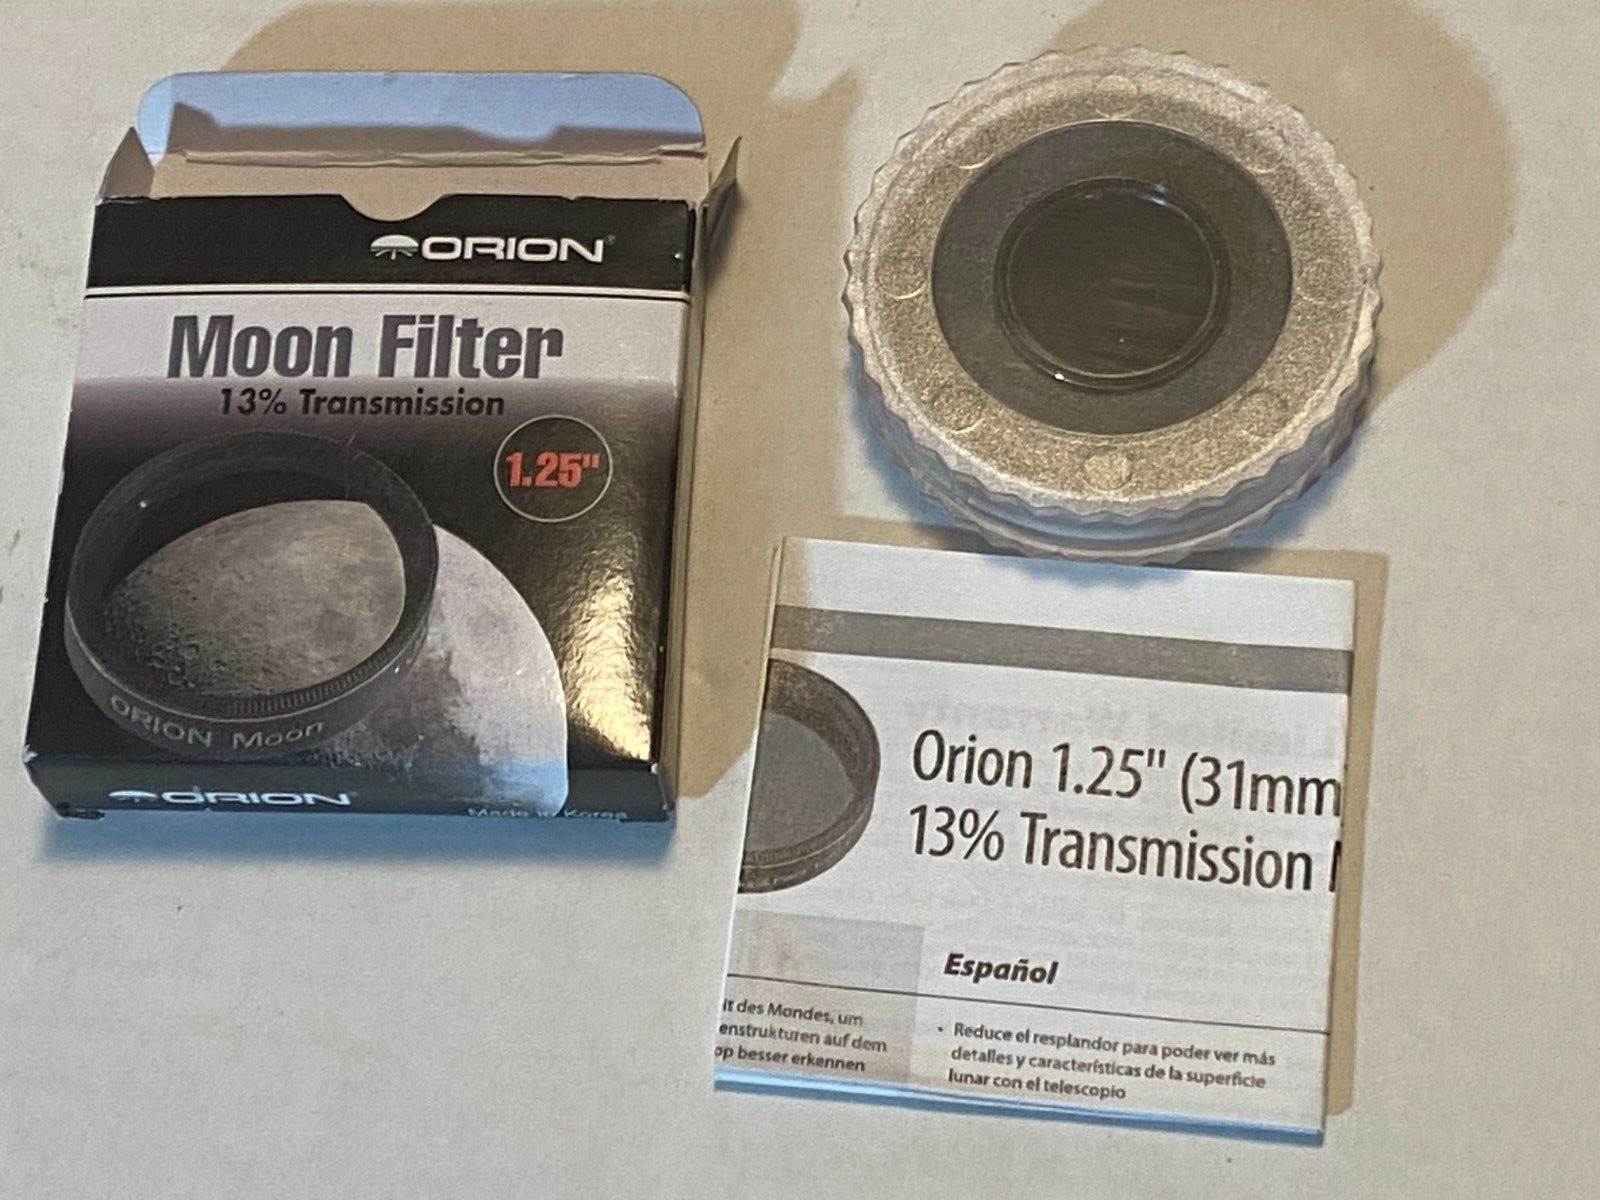 Orion Moon Filter 13% Transmission 1.25”